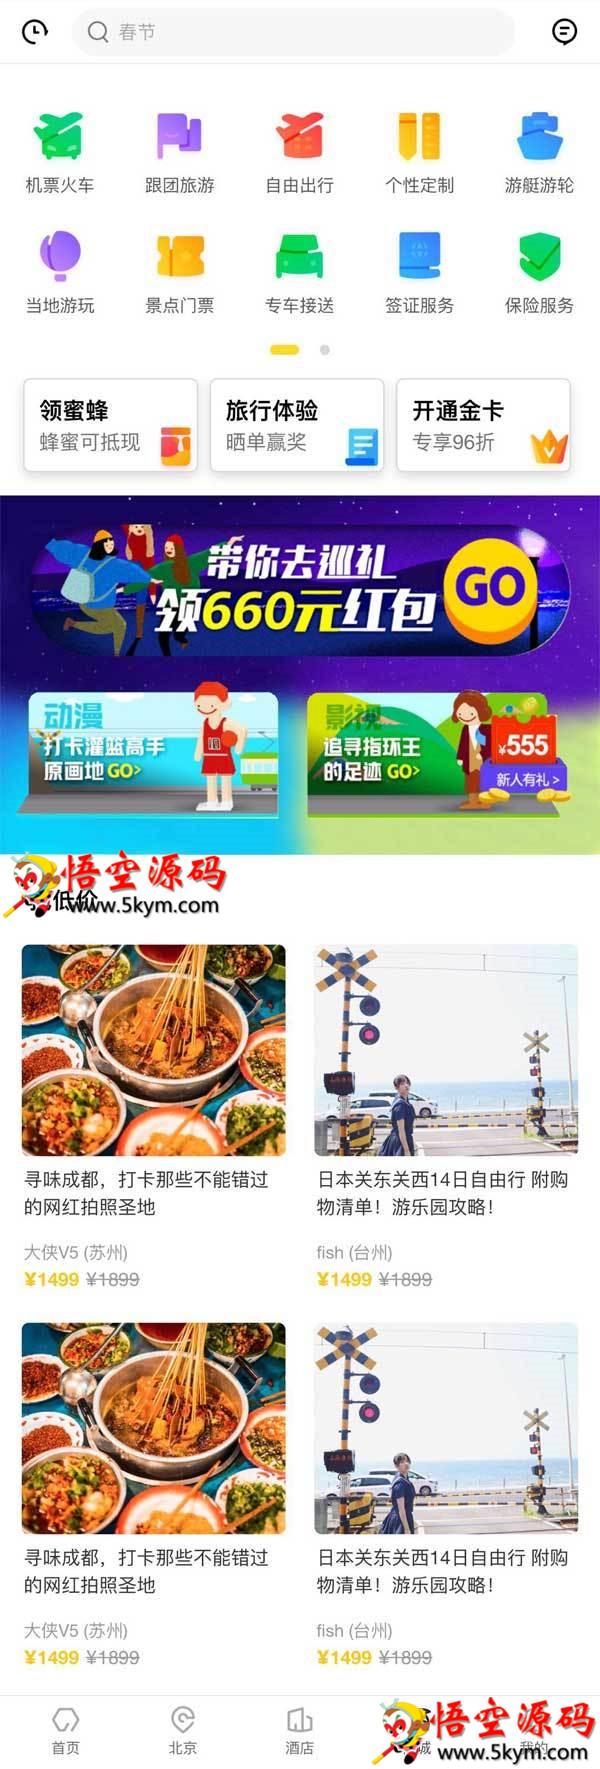 html5手机网站模板源码下载 爱旅游app官网模板 DIV+CSS代码下载